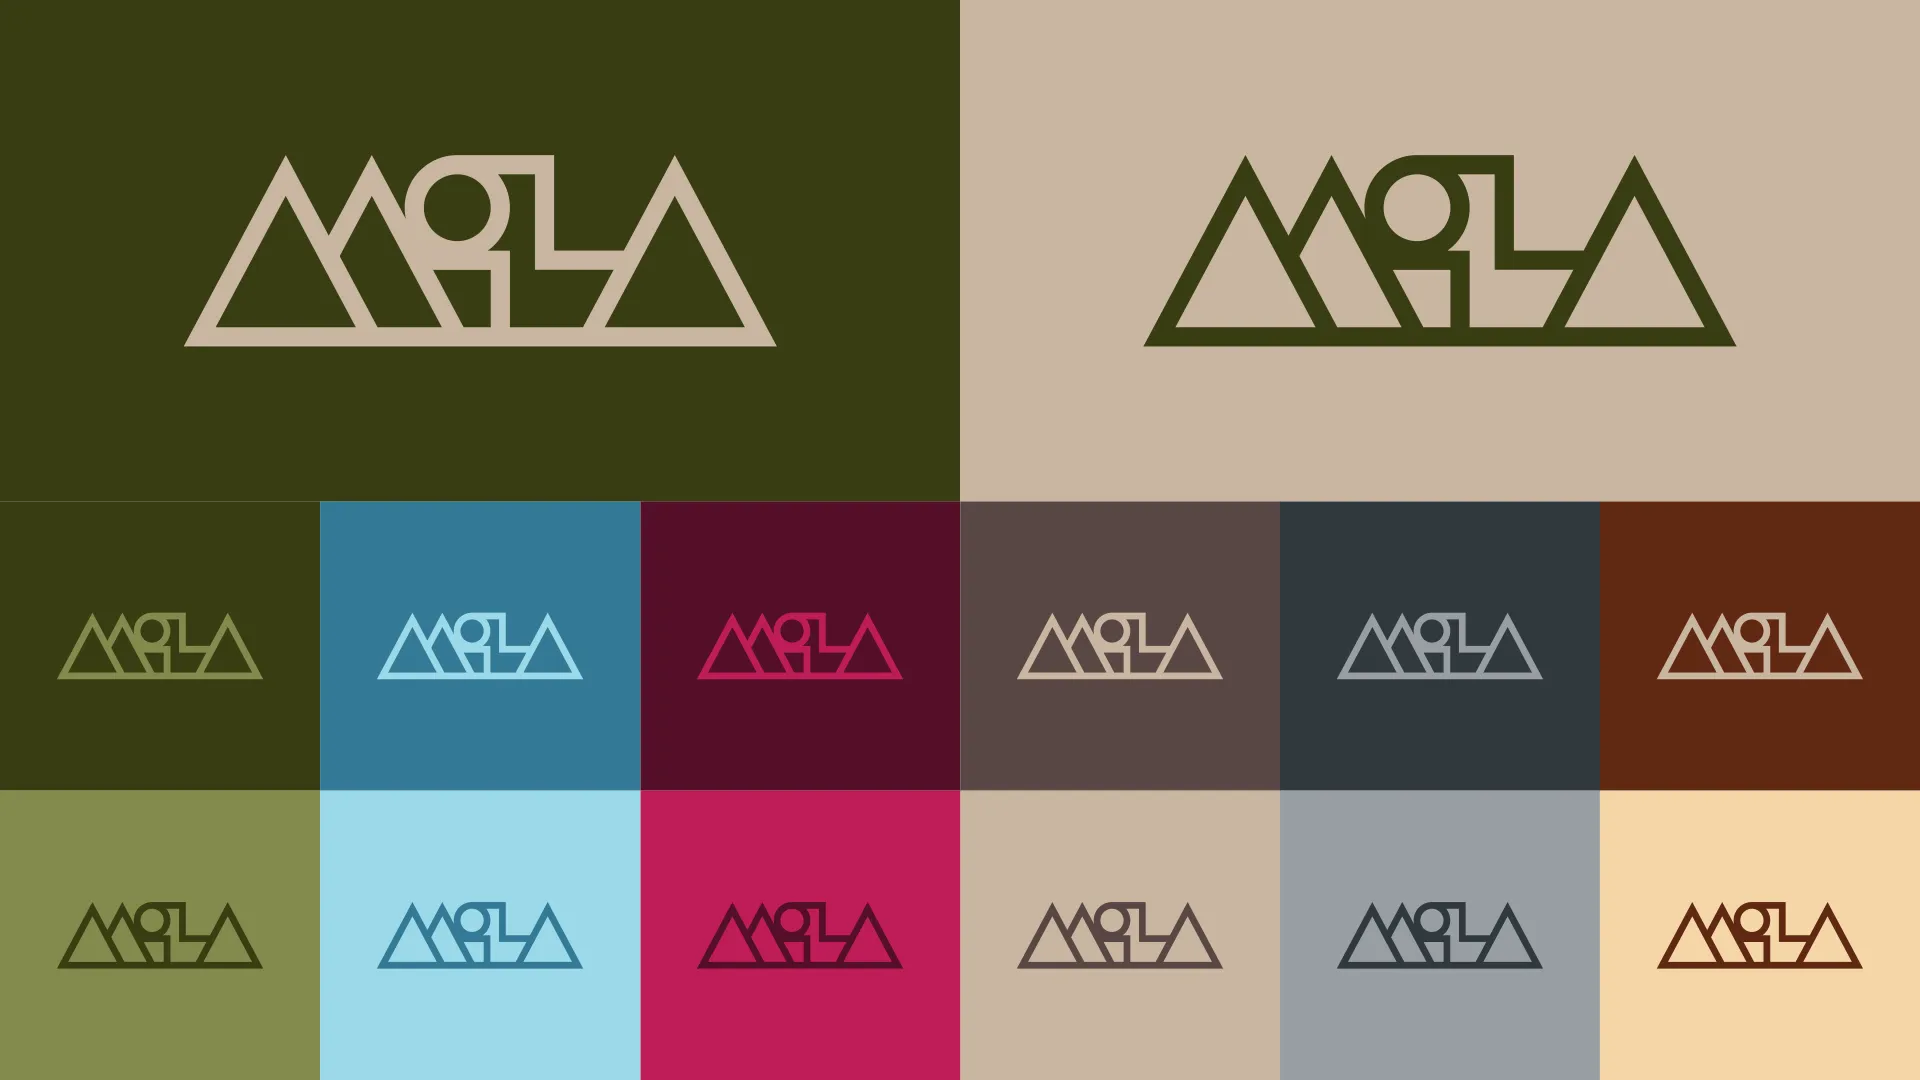 MiLA - Brand identity made by Brand Husl